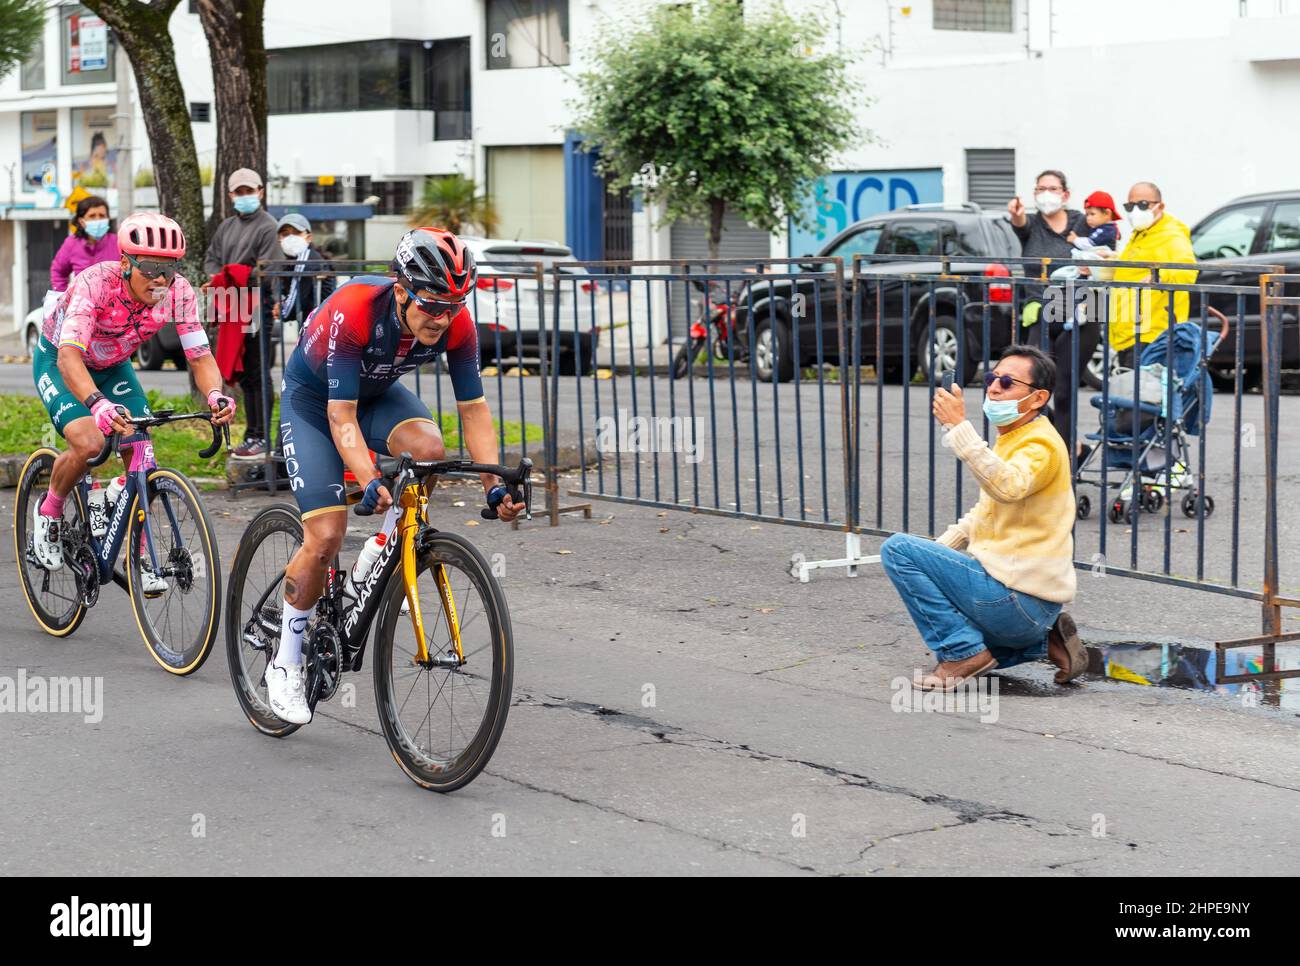 Richard Carapaz, cycliste équatorien et médaillé d'or aux jeux Olympiques de Tokyo, finissant deuxième de la course sur route des hommes équatoriens à vélo d'or, Quito, Equateur. Banque D'Images